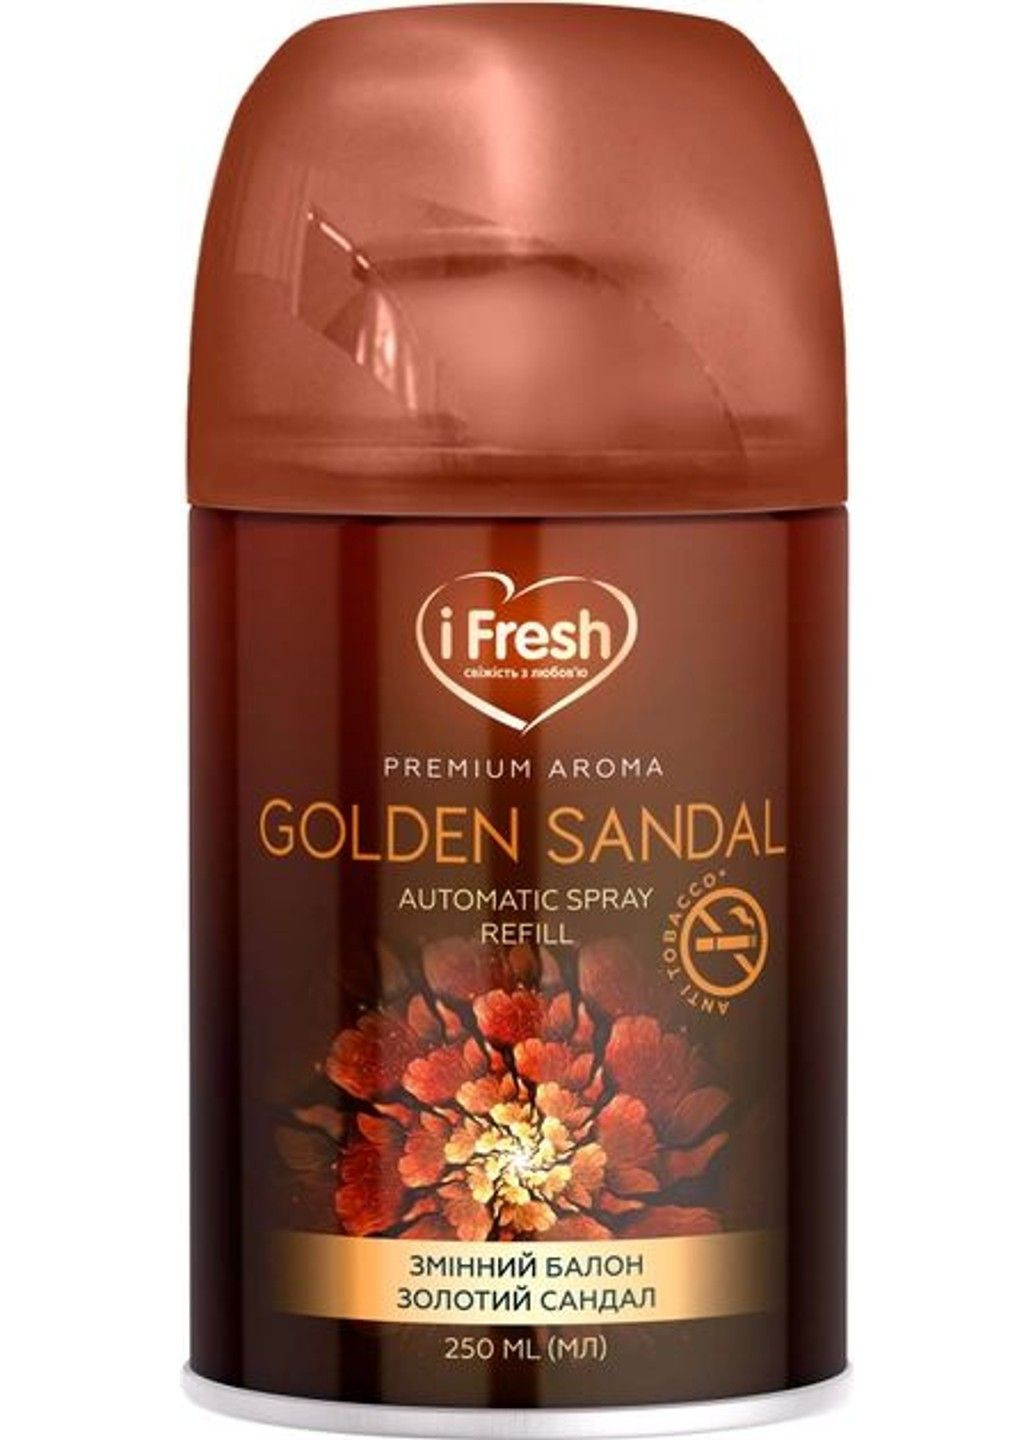 Сменный аэрозольный баллон Premium aroma golden sandal 250 мл iFresh (280898437)